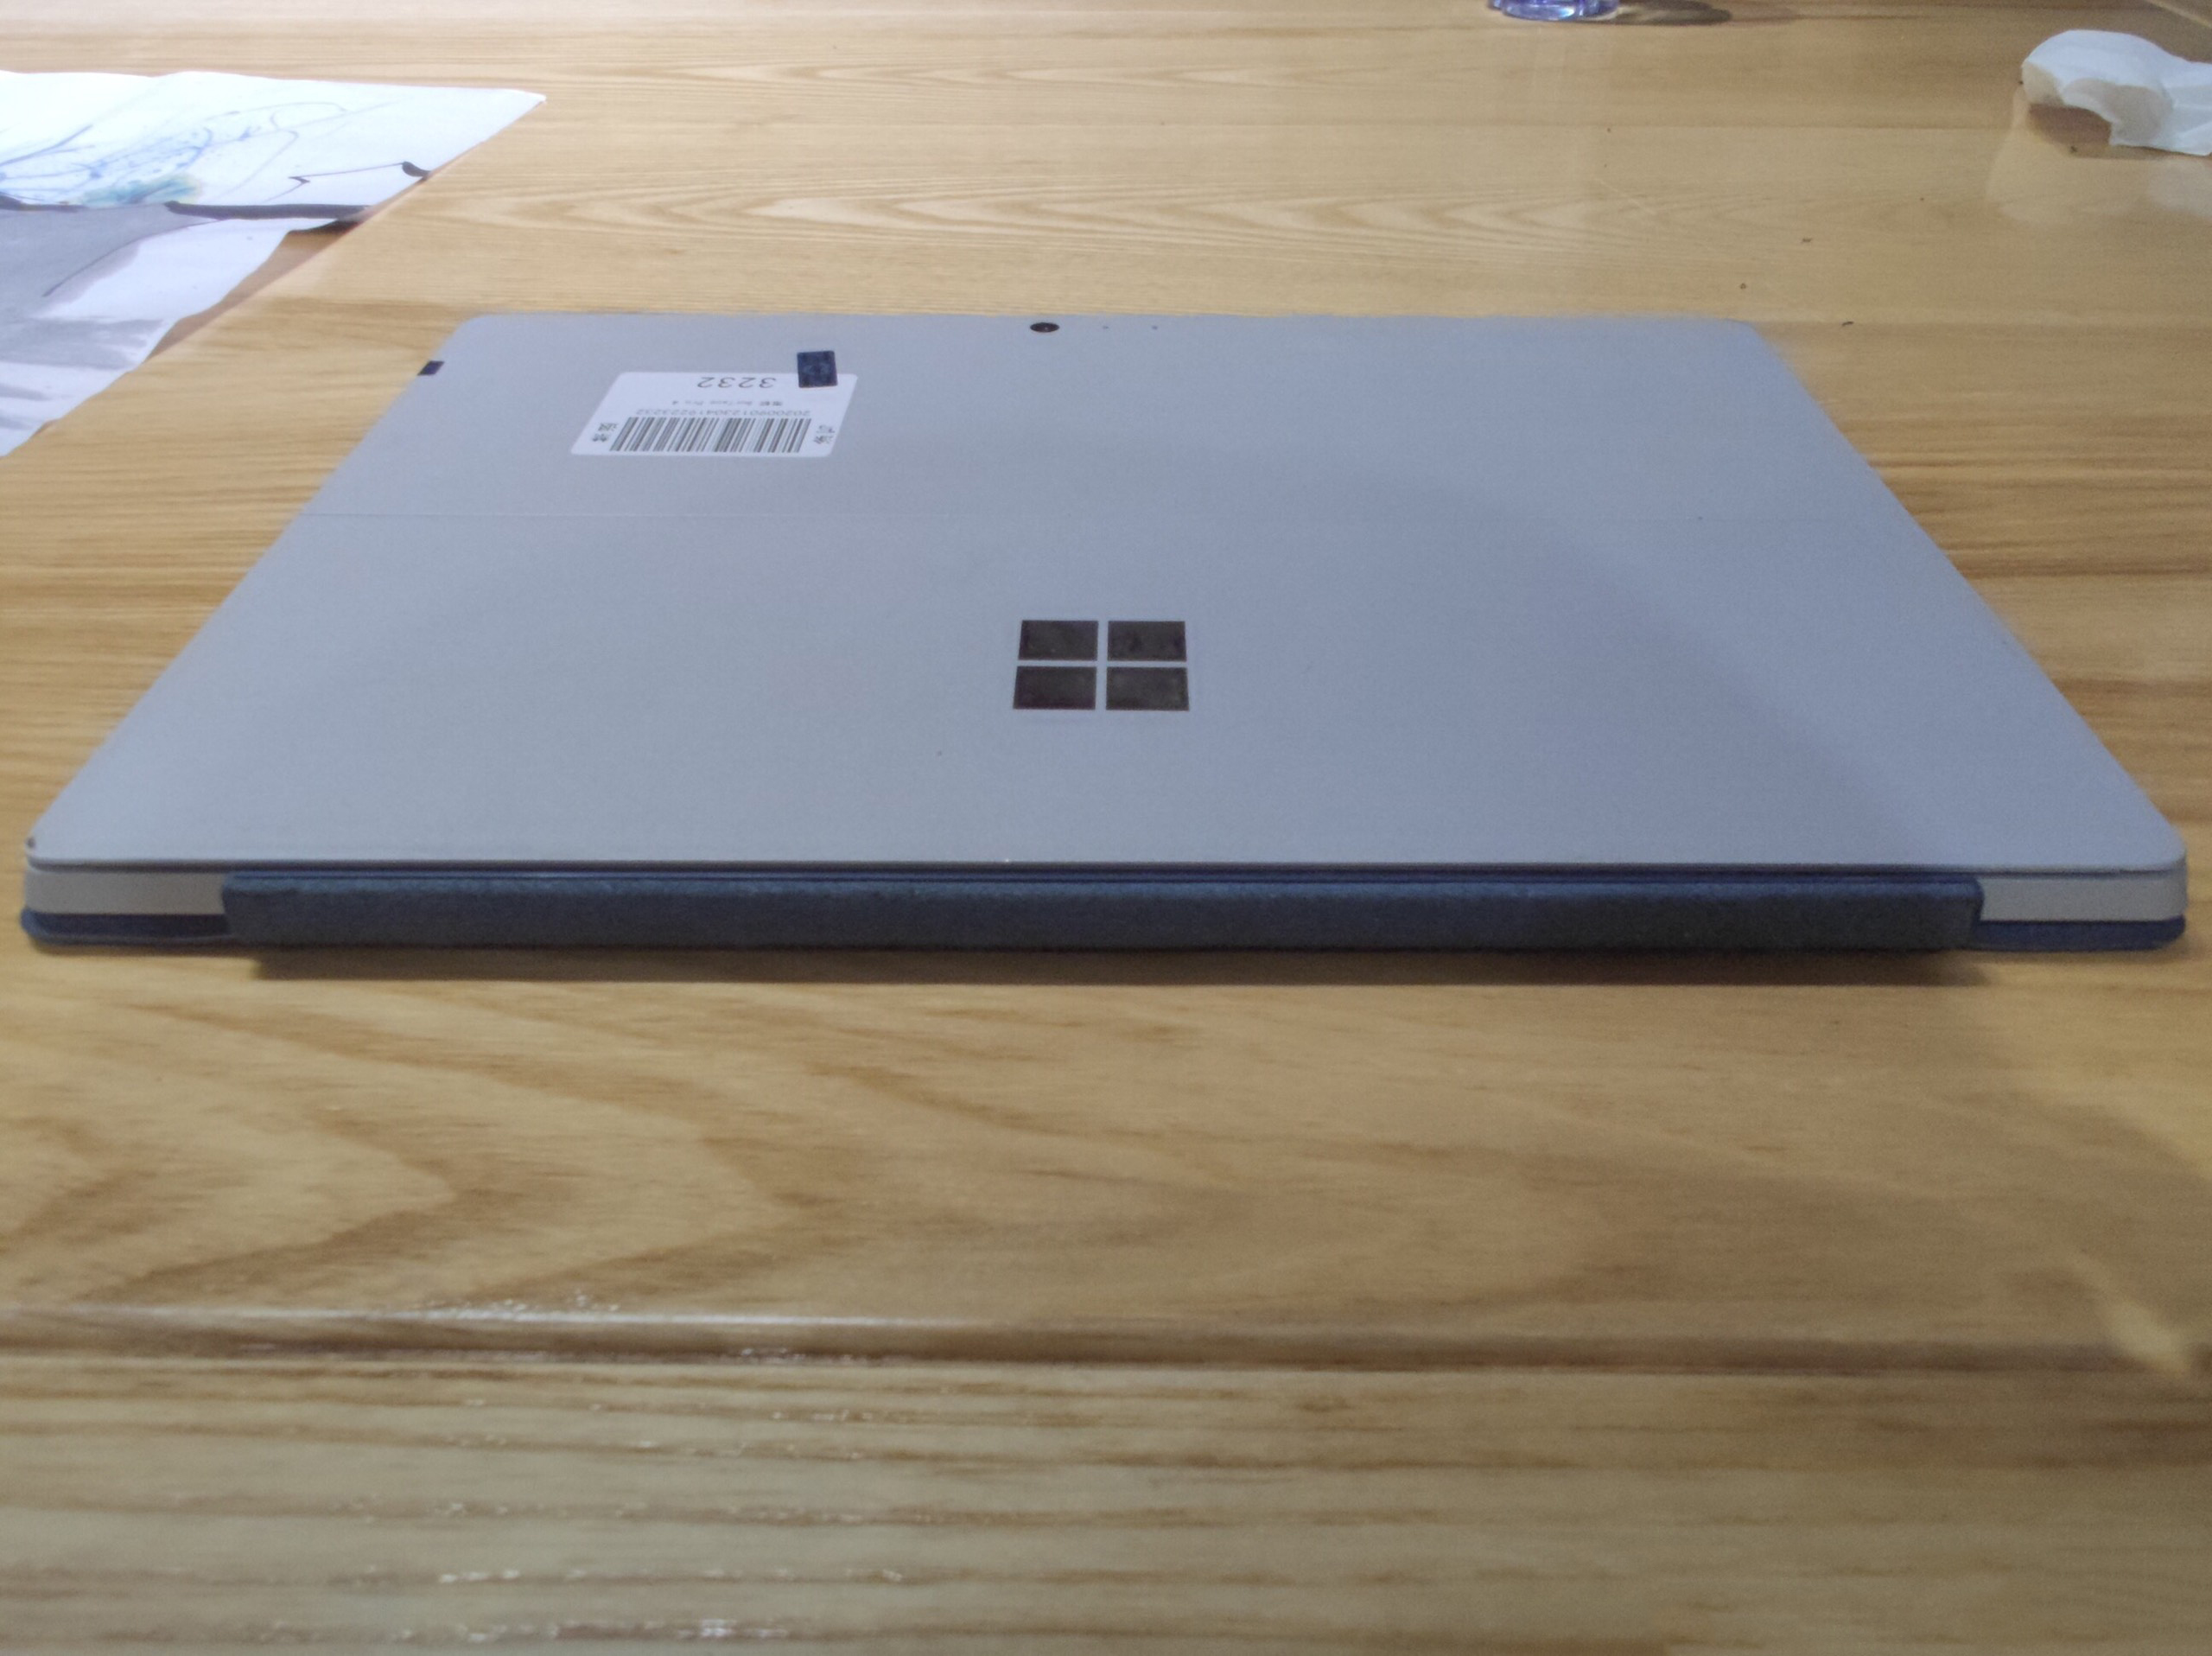 [Trả góp 0%]laptop 2 trong 1 kiêm máy tính bảng Surface Pro 4 Core i5-6300U/4gb Ram/128gb SSD/12.3inch 2K